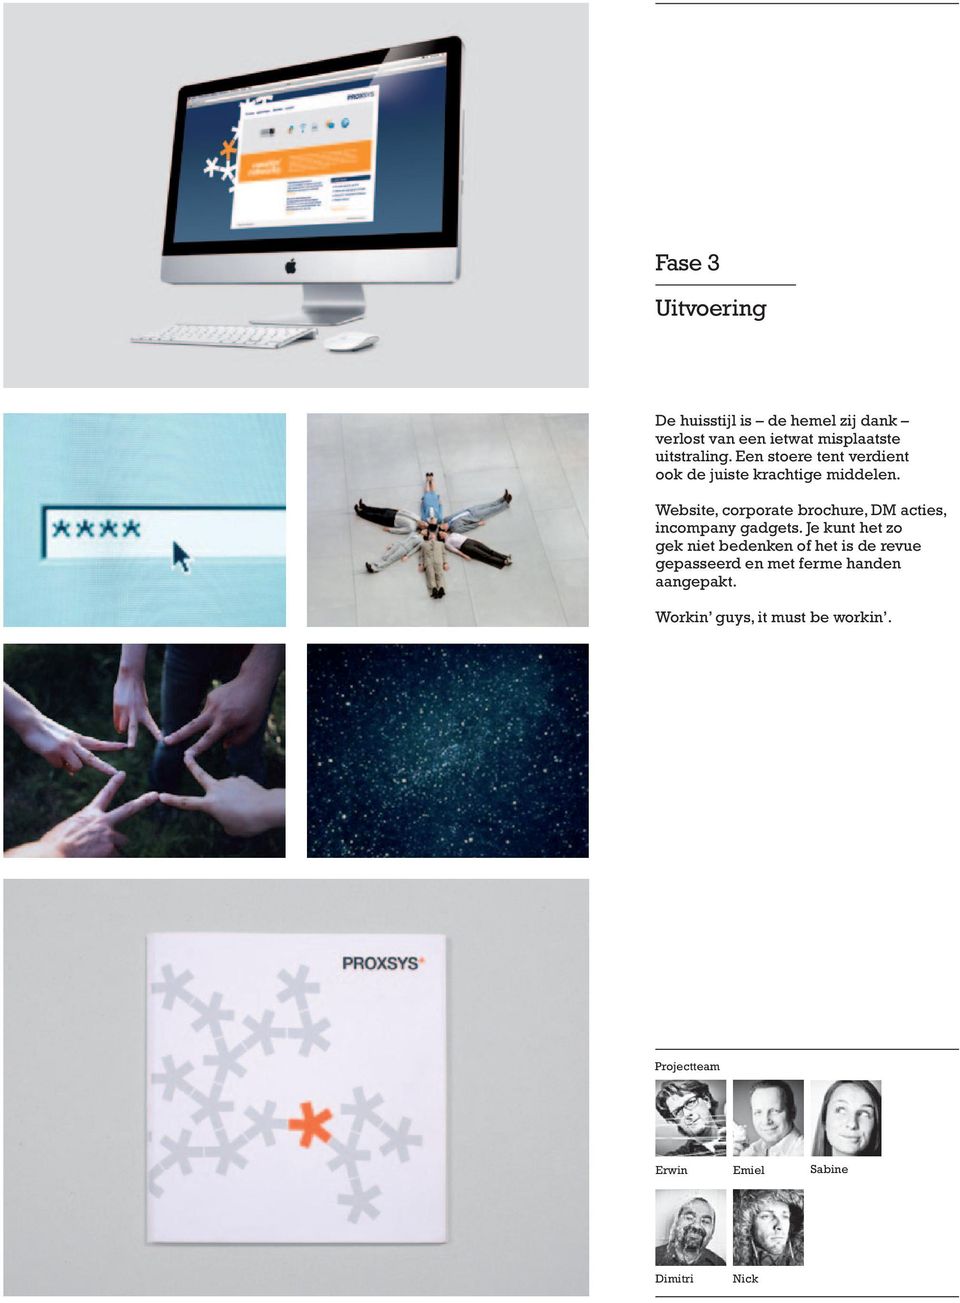 Website, corporate brochure, DM acties, incompany gadgets.